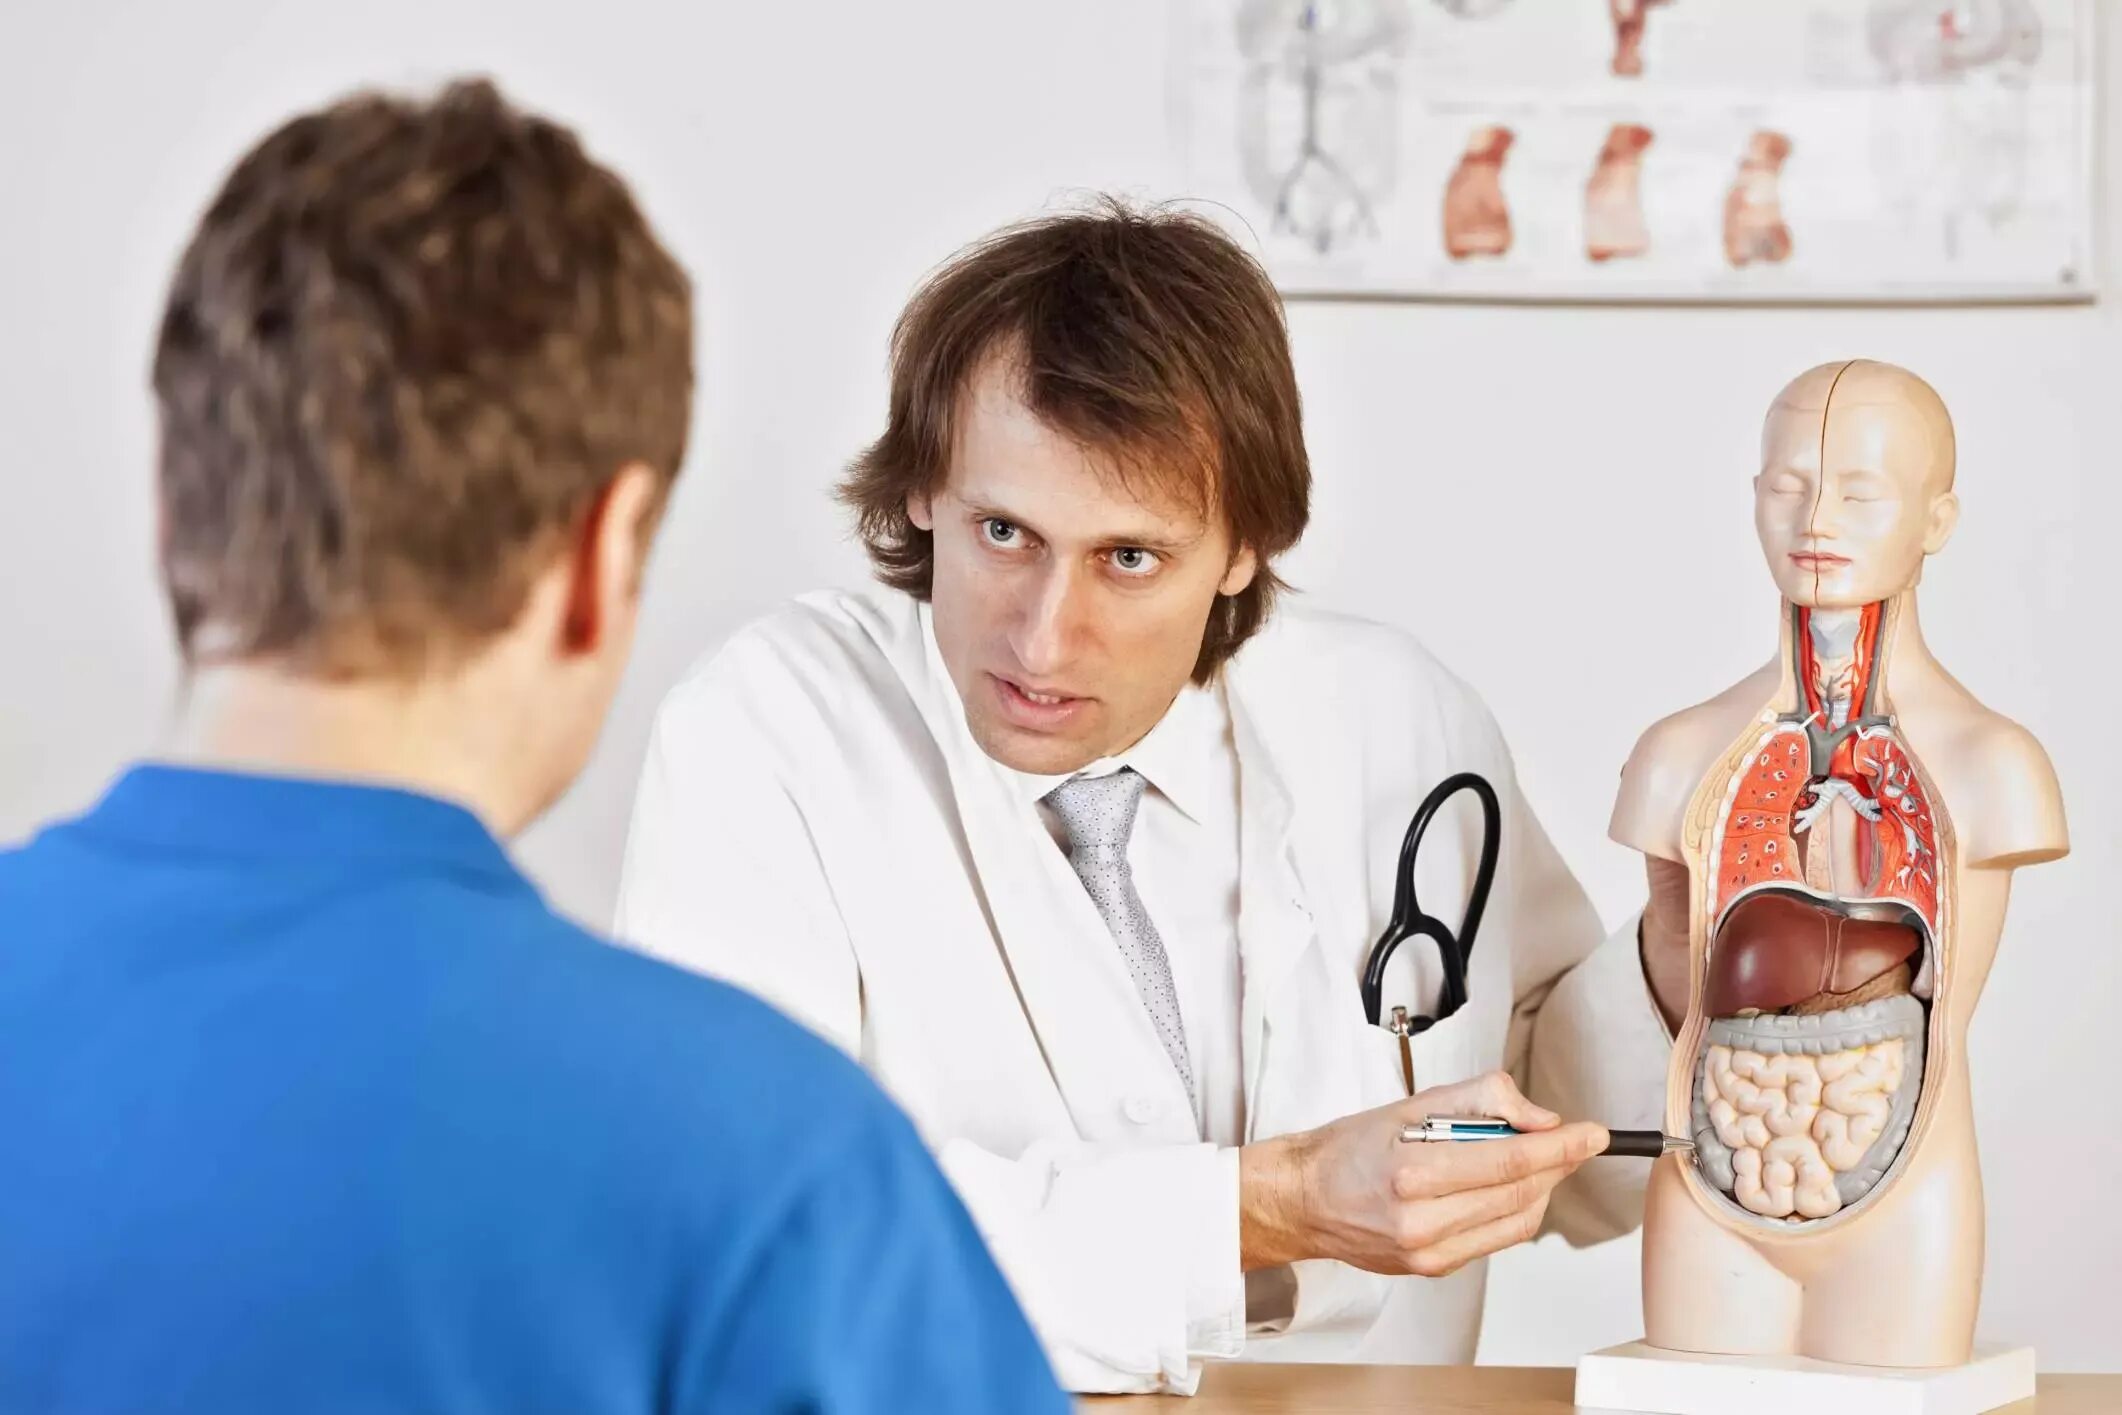 Применение врач. Желудок доктор. Венерология у женщин фото. Врач объясняет фото желудок.